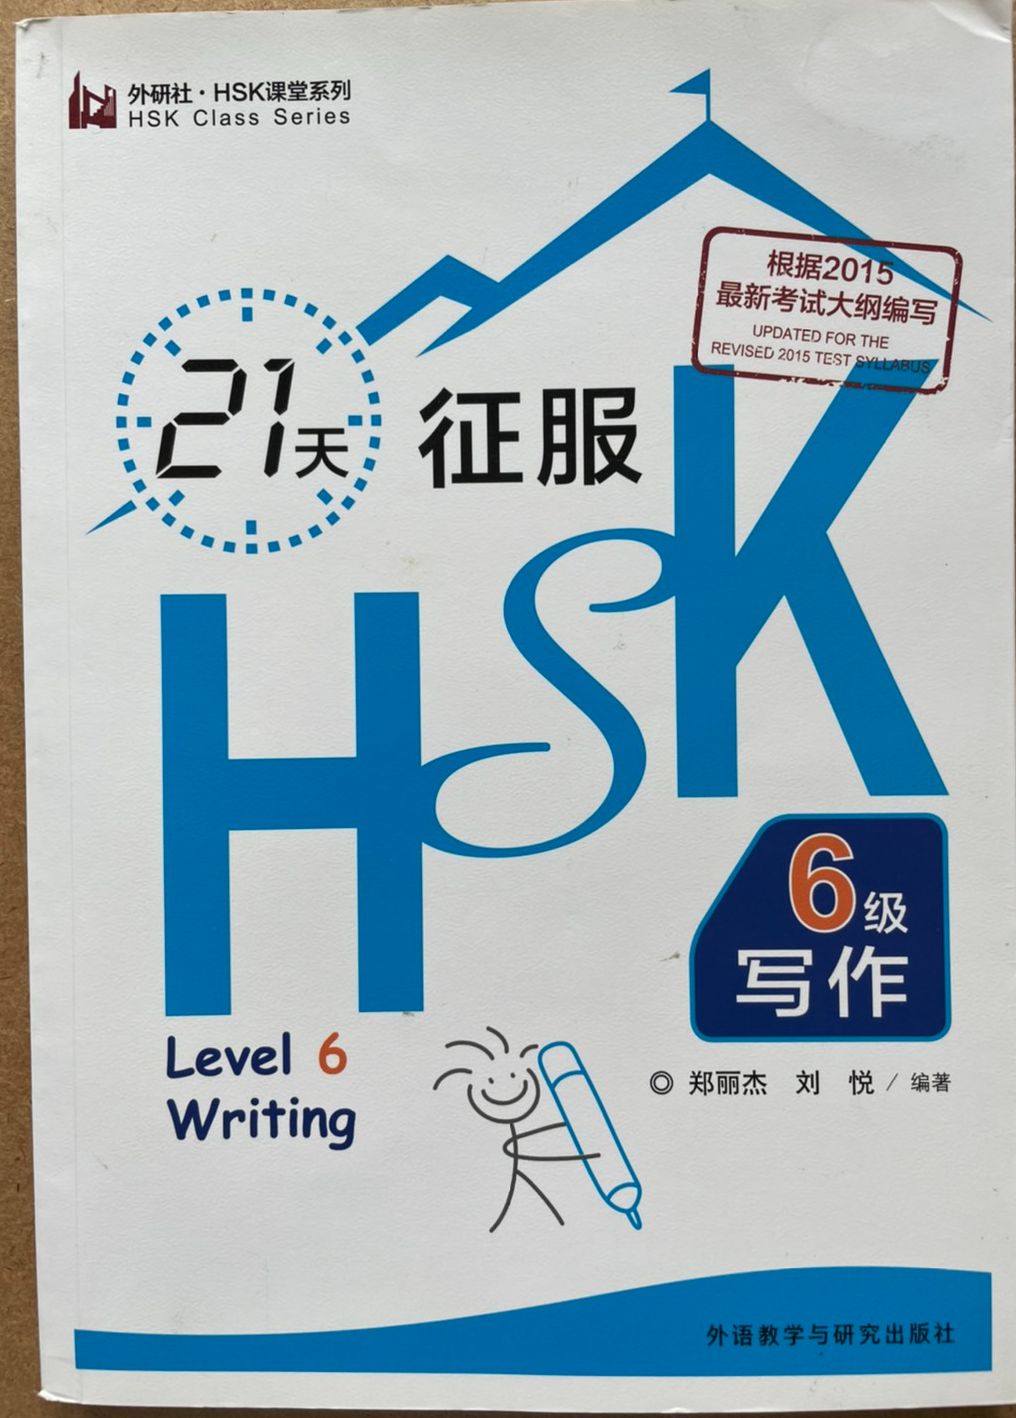 HSK6 แบบเรียนภาษาจีน HSK 21天征服HSK6级写作  95%NEW